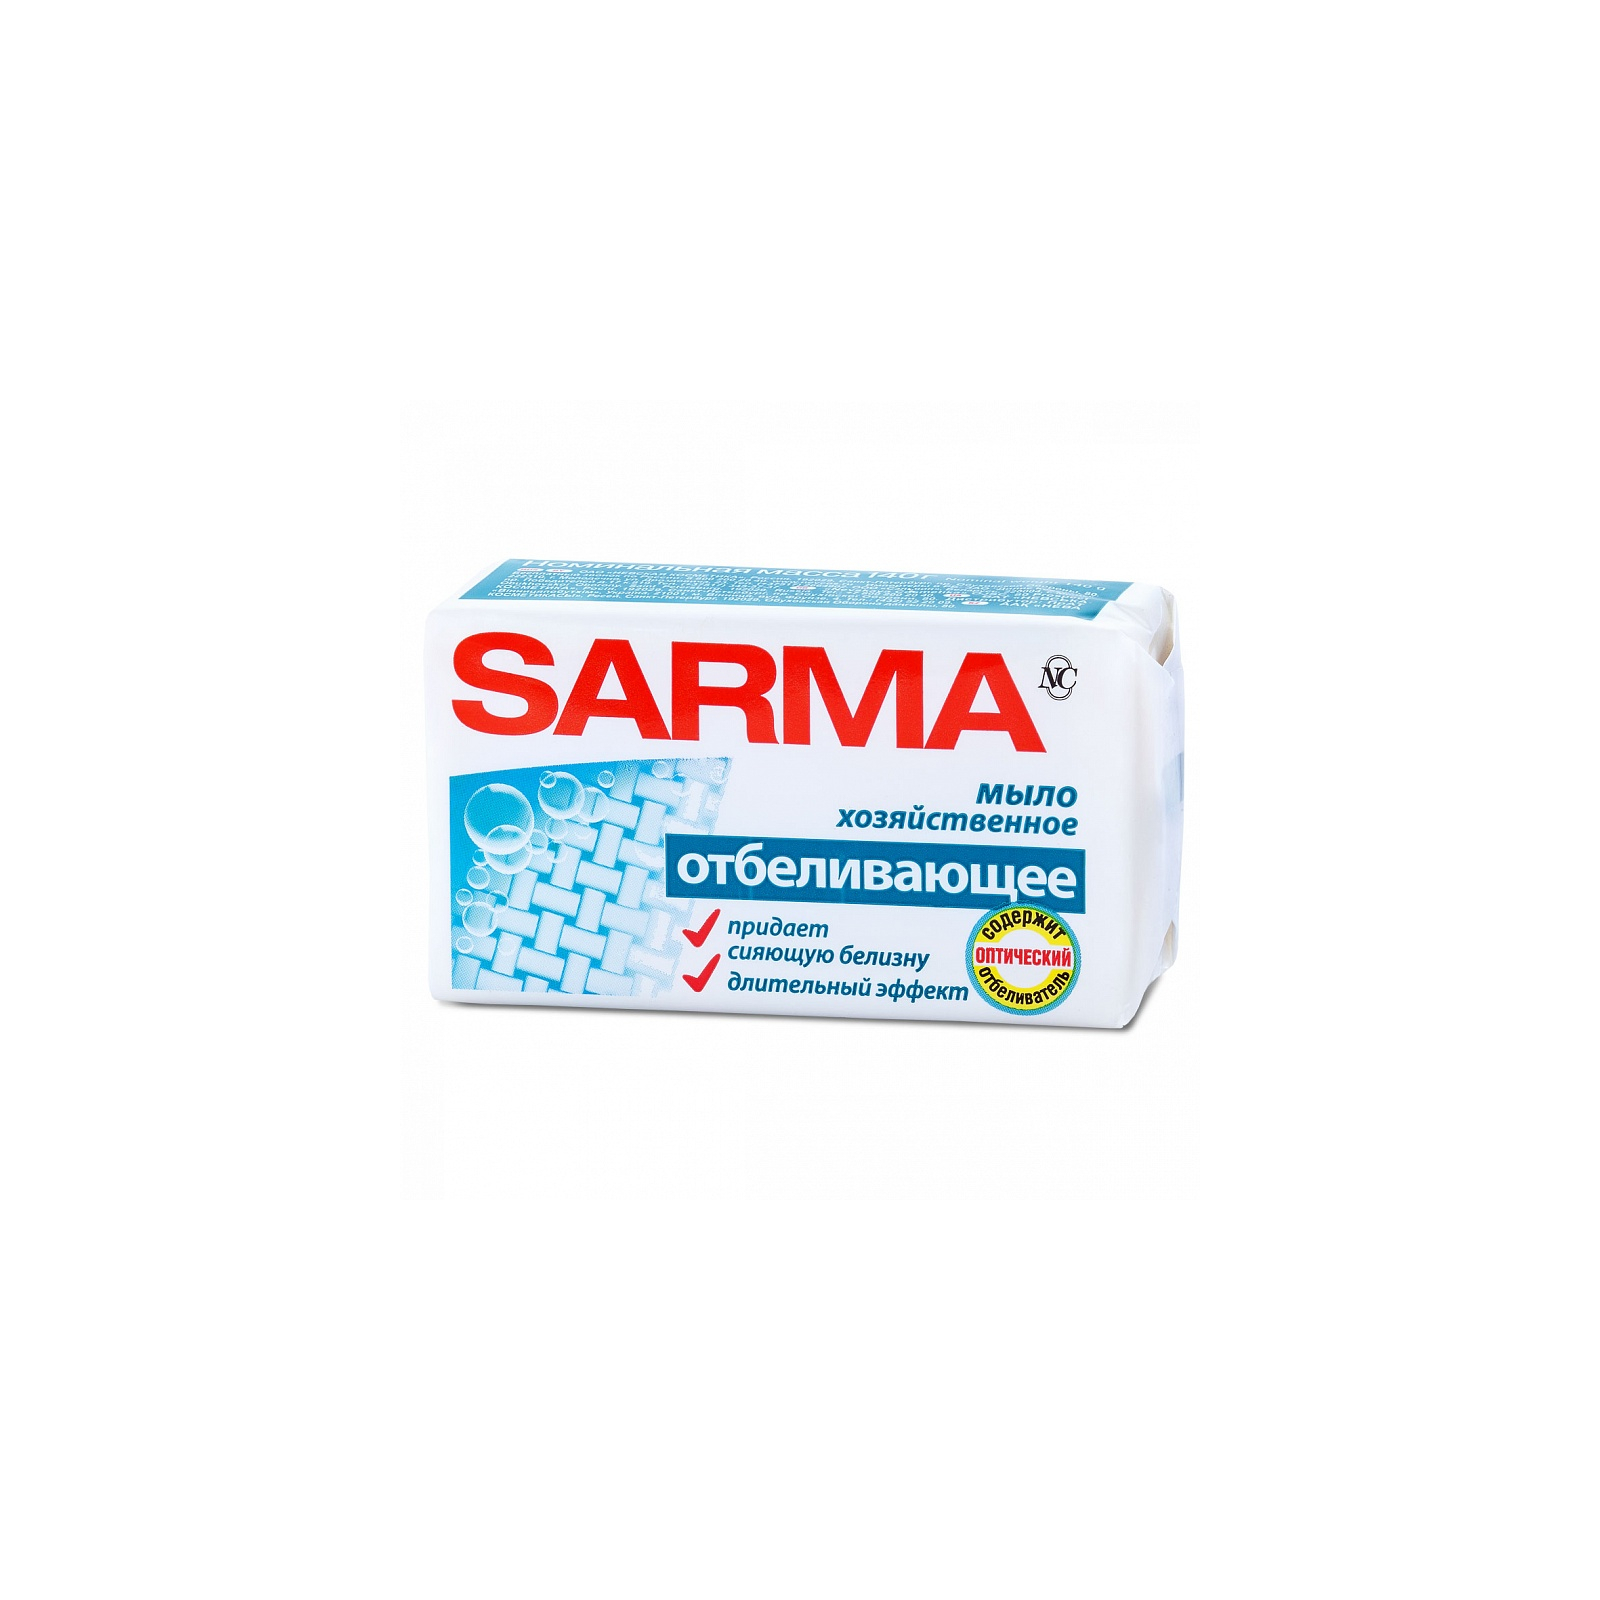 Отбеливатель Sarma хозяйственное мыло 140 г (4600697111490)